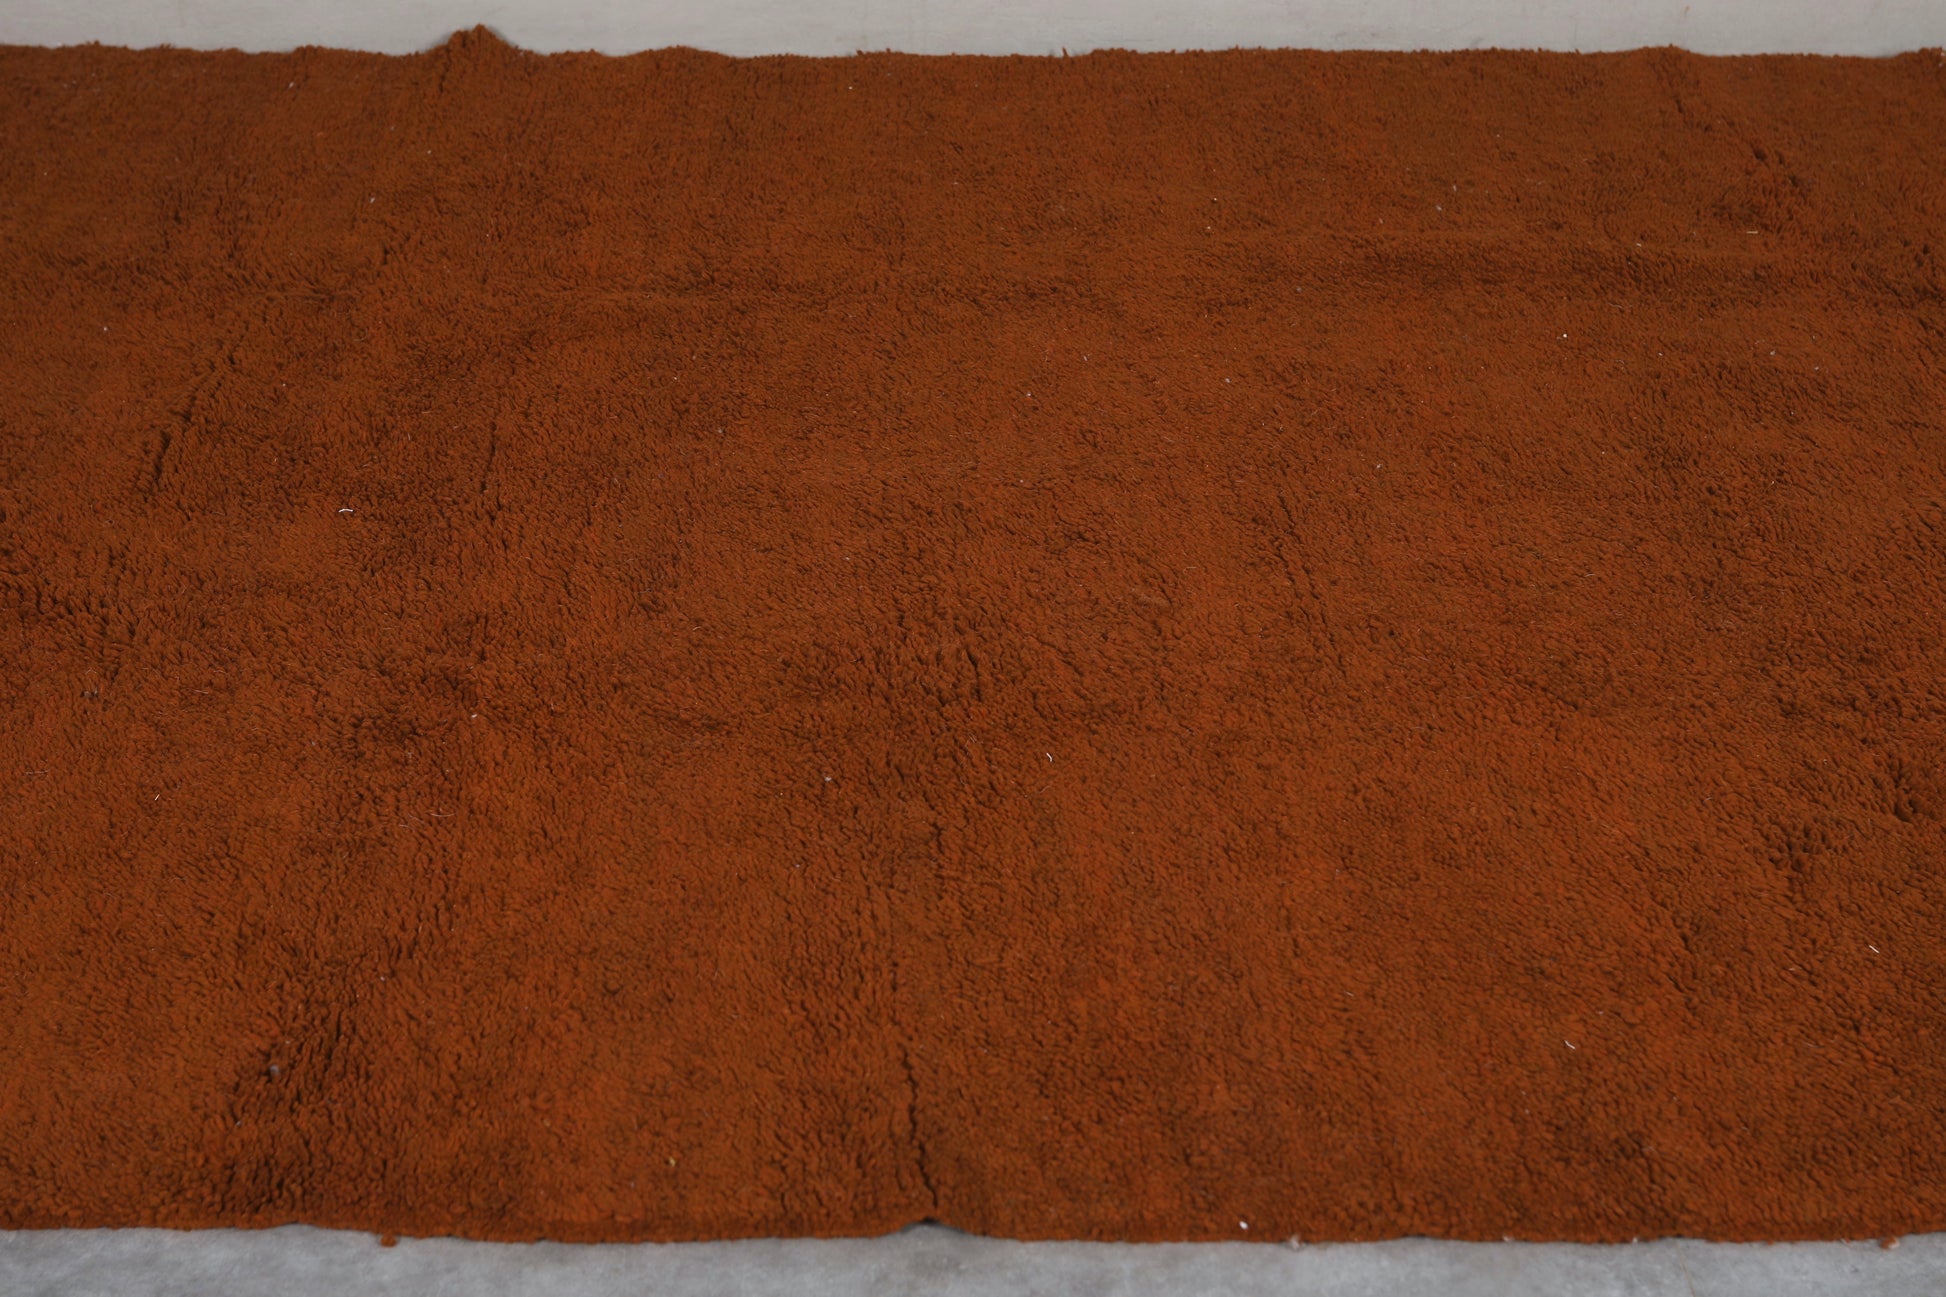 Moroccan rug 8.2 X 11.8 Feet - Beni ourain rugs